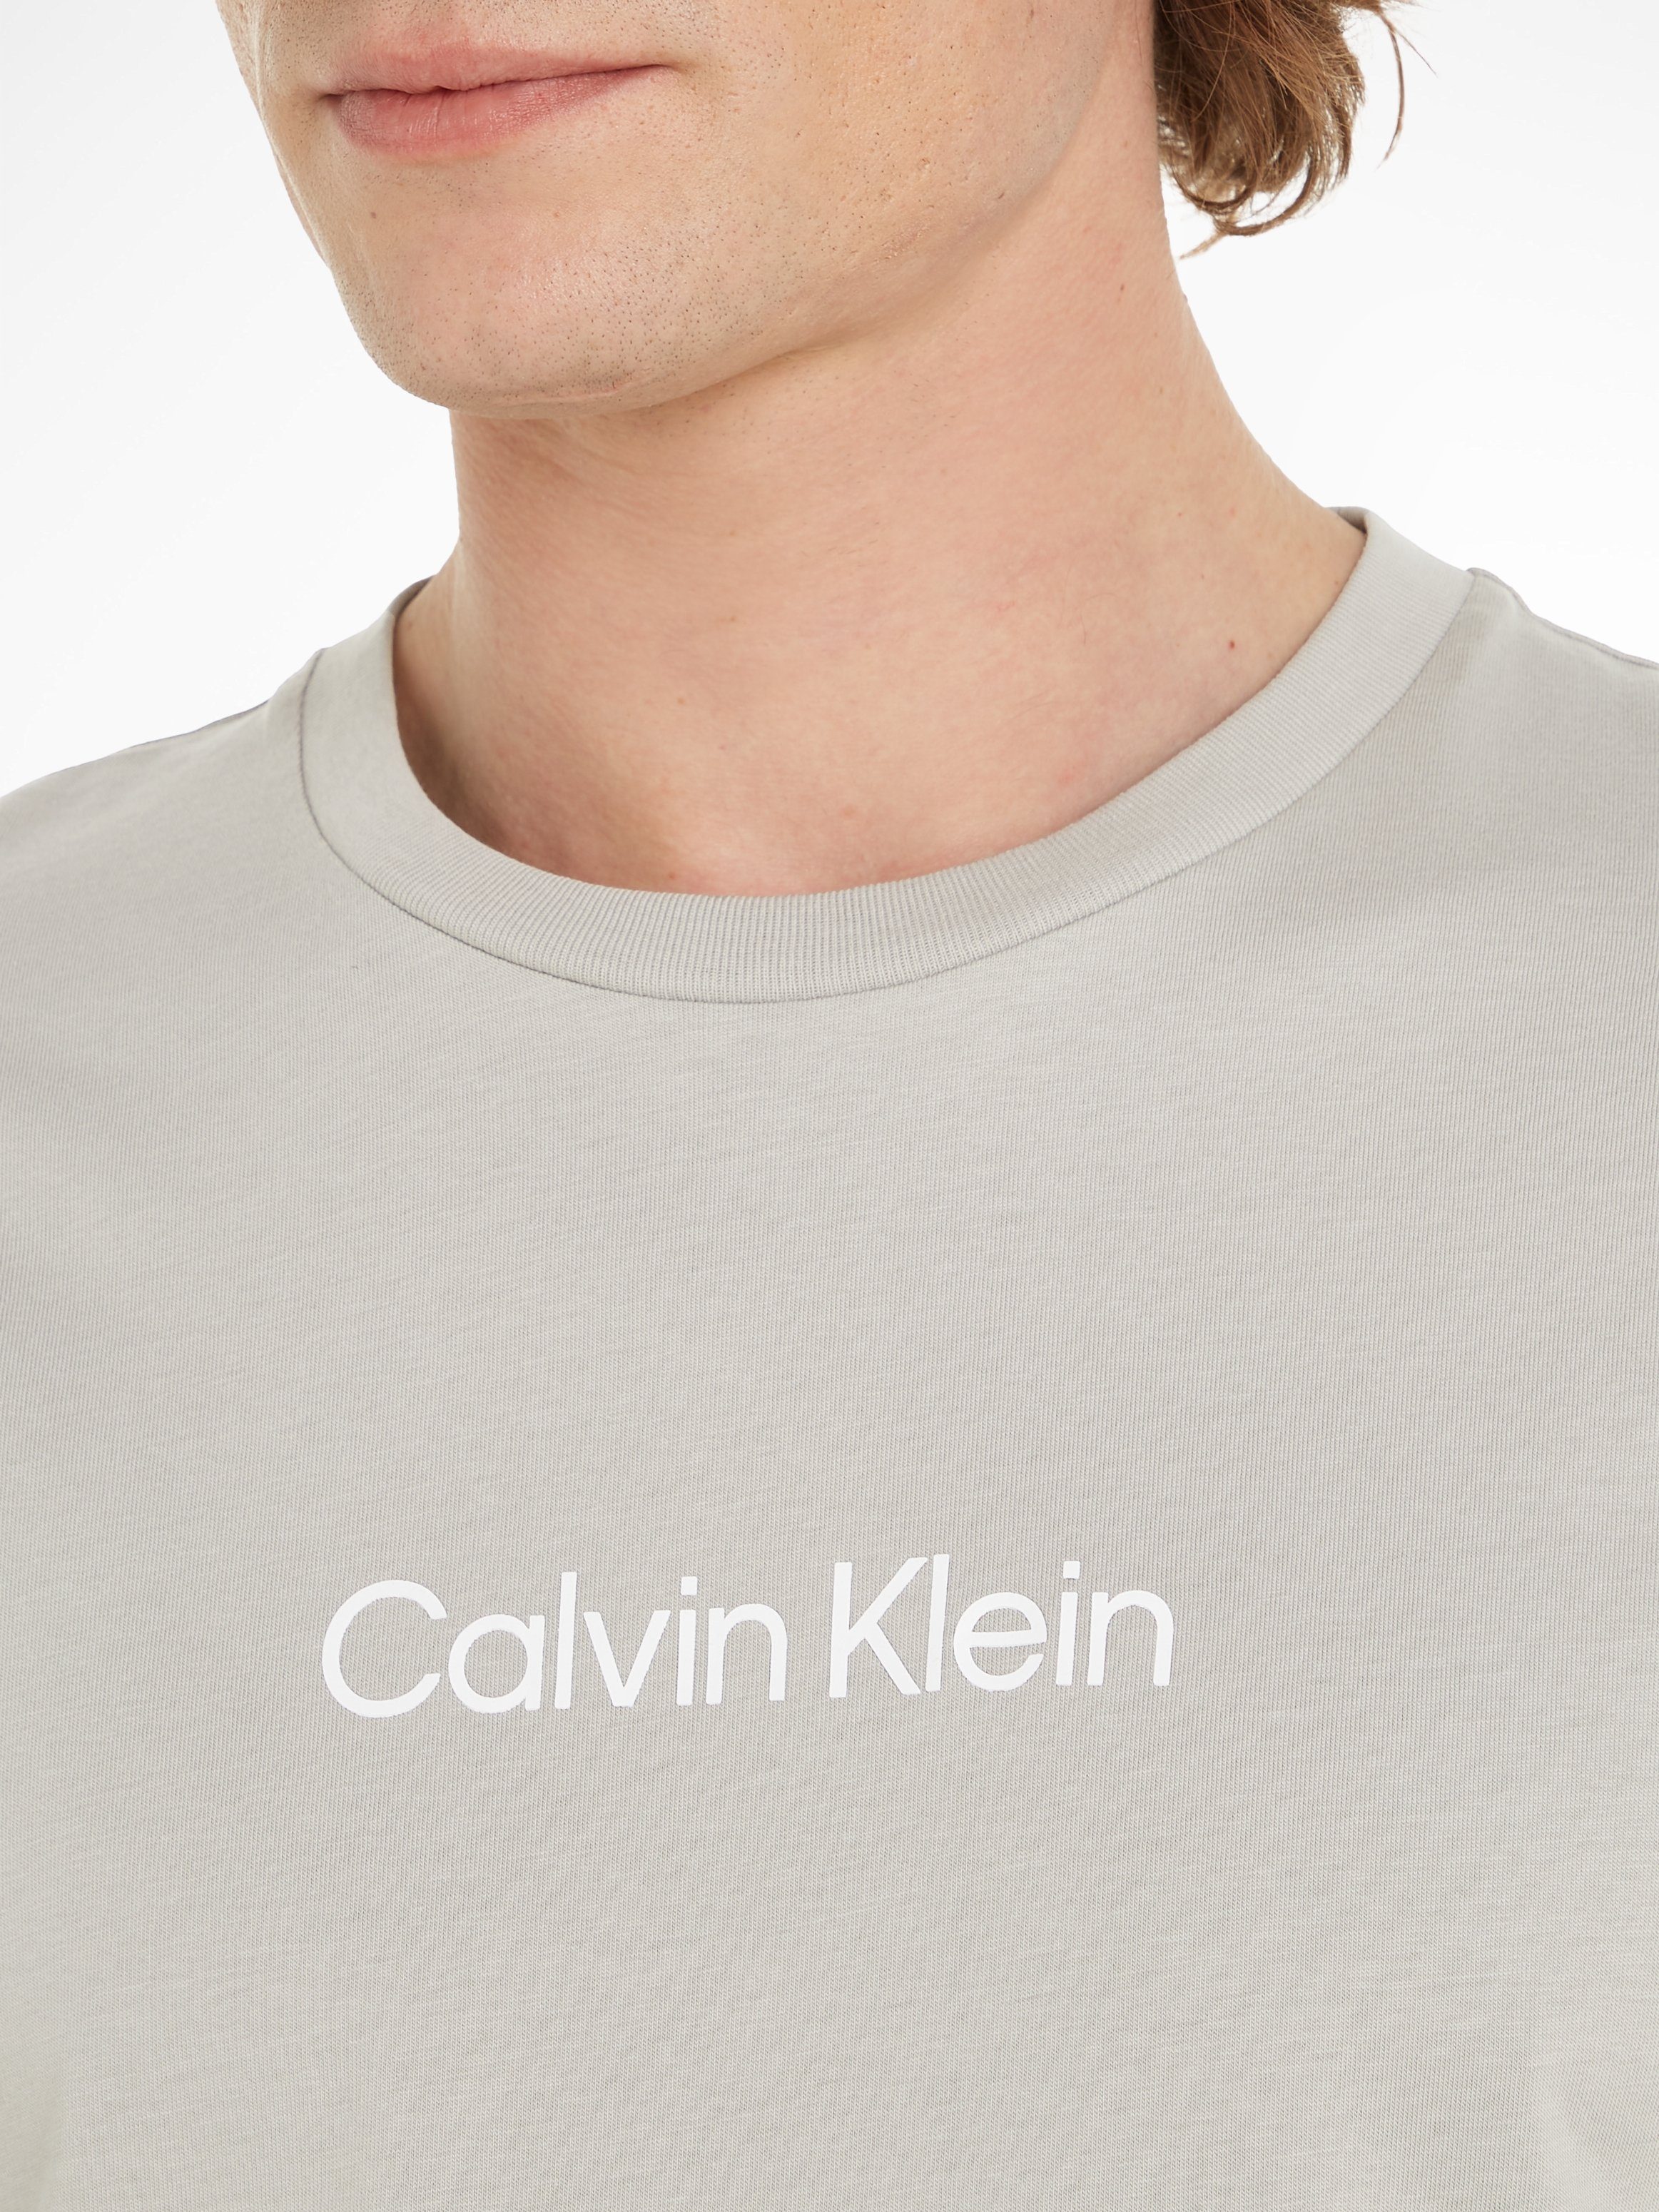 Calvin Klein aufgedrucktem mit LOGO COMFORT Ghost Gray Markenlabel HERO T-SHIRT T-Shirt